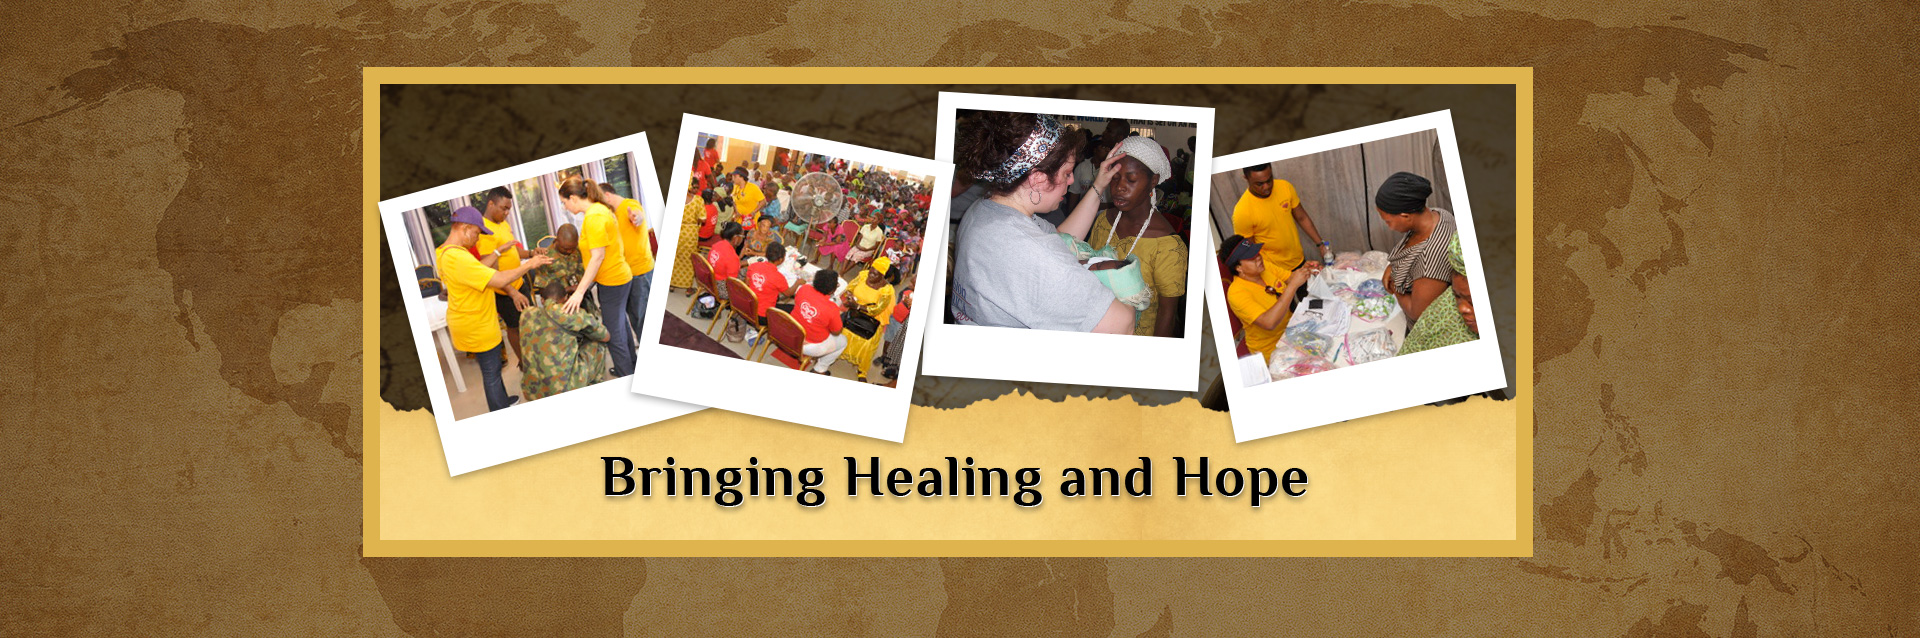 Bringing Healing and Hope